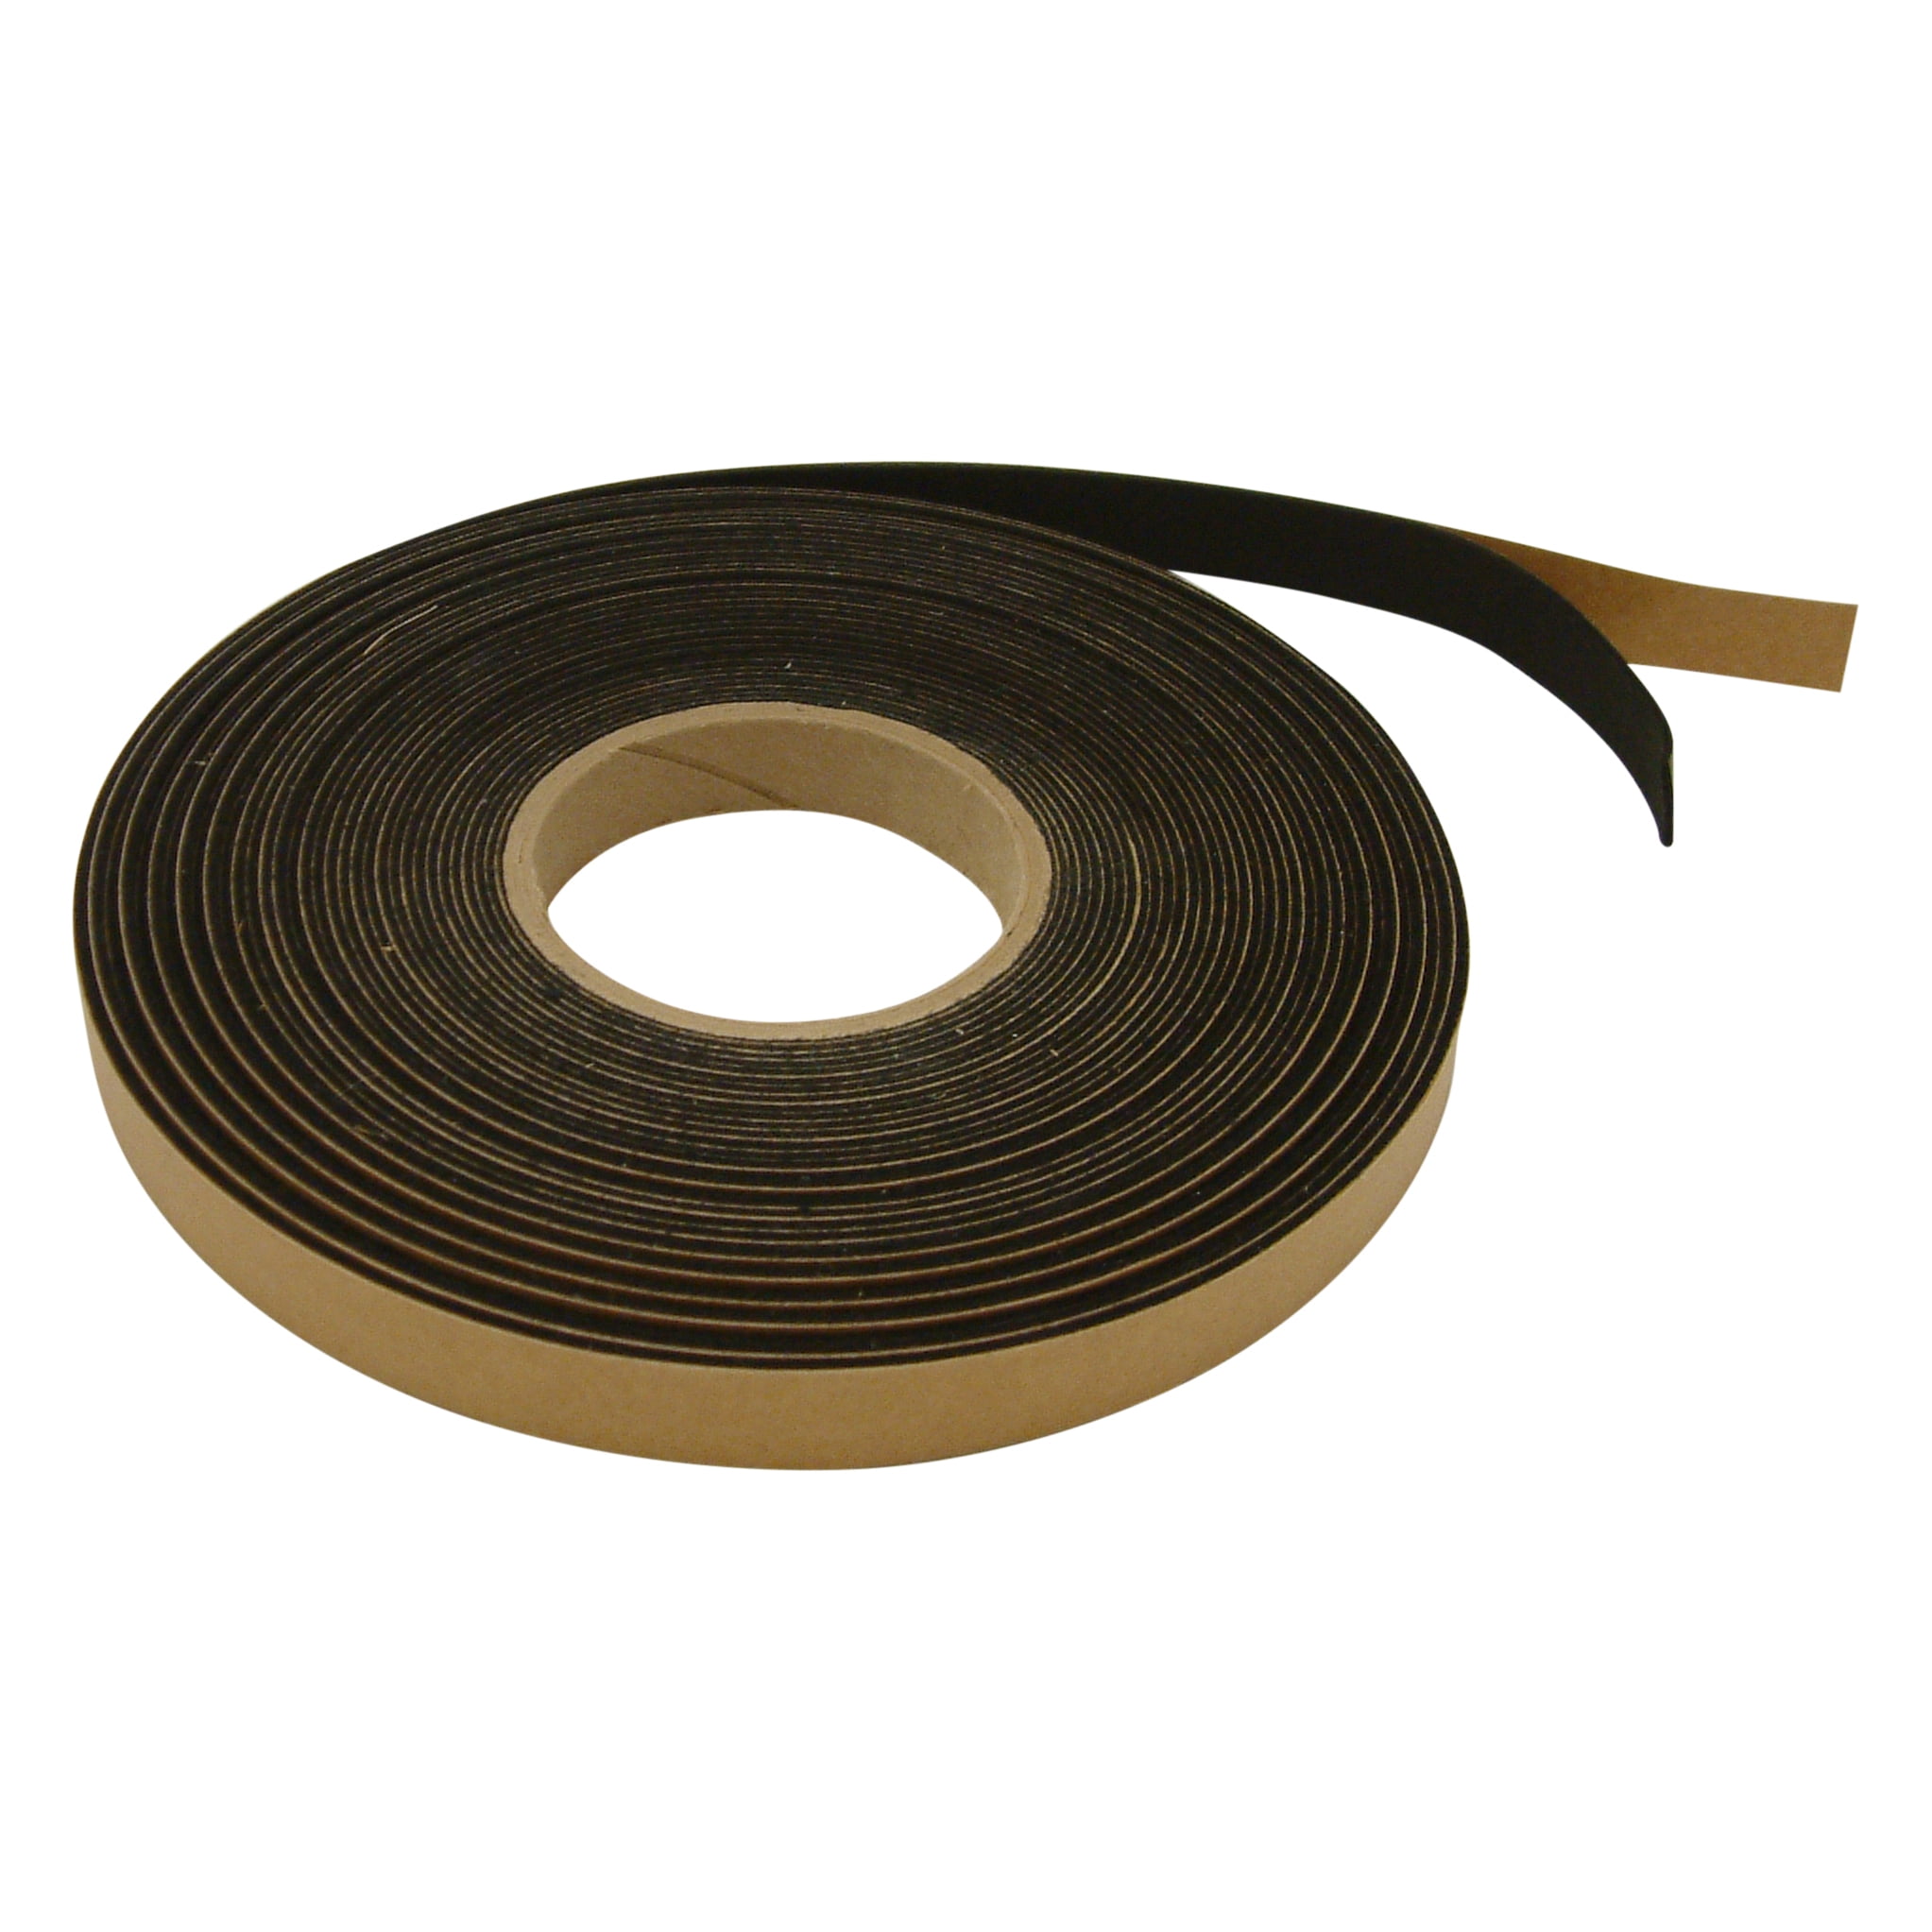 JVCC FELT-06 Polyester Felt Tape [1mm thickness felt]: 4 in. x 75 ft.  (Black)